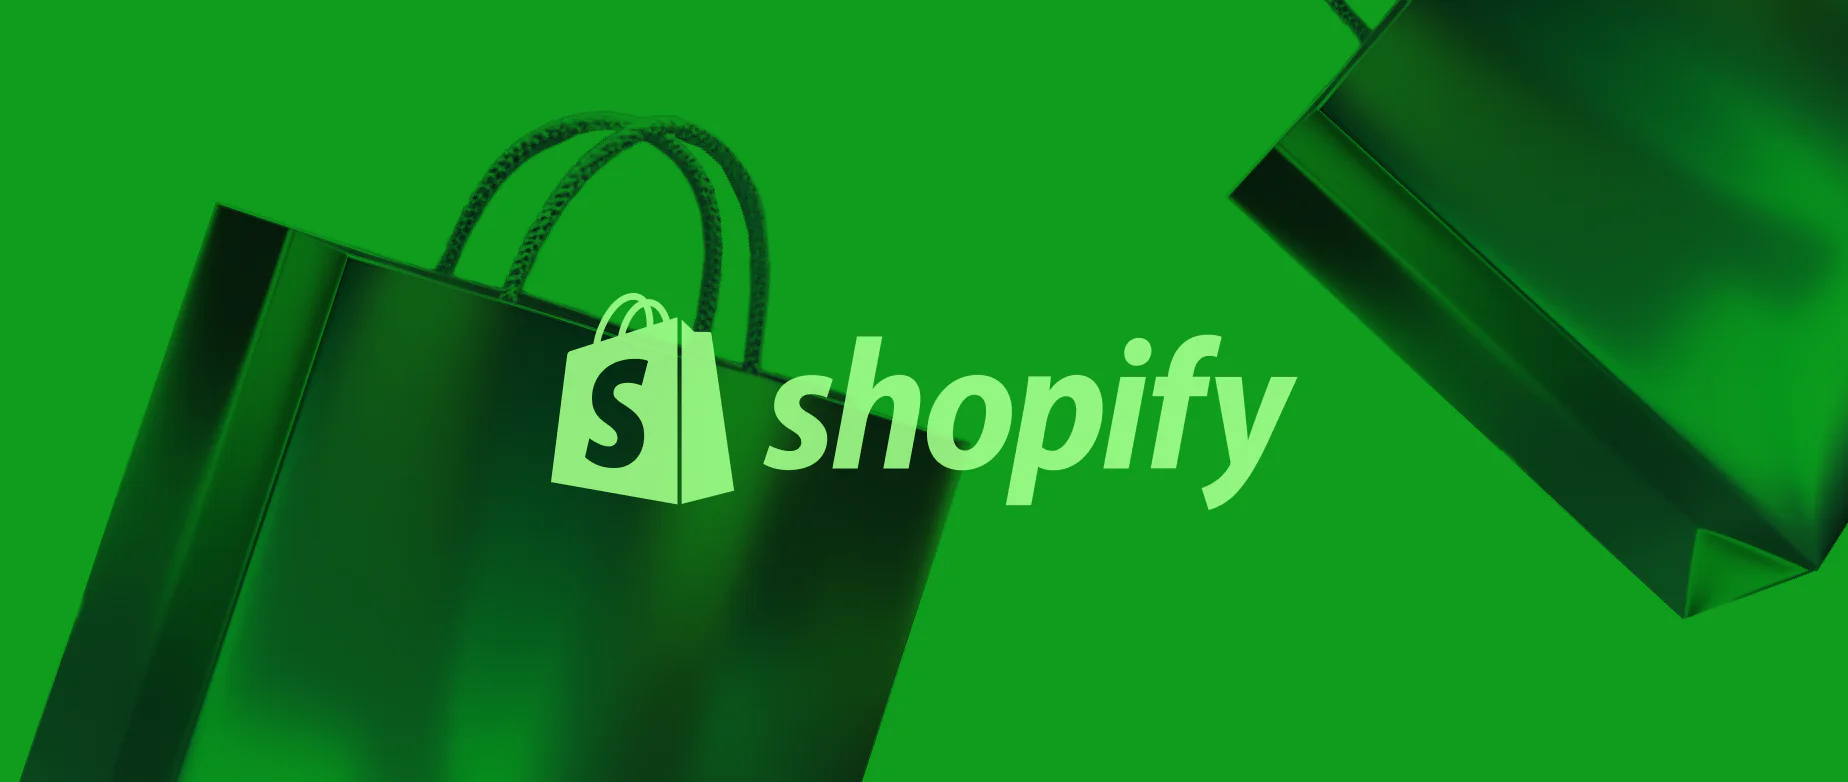 绿色背景下Shopify商标和纸购物袋